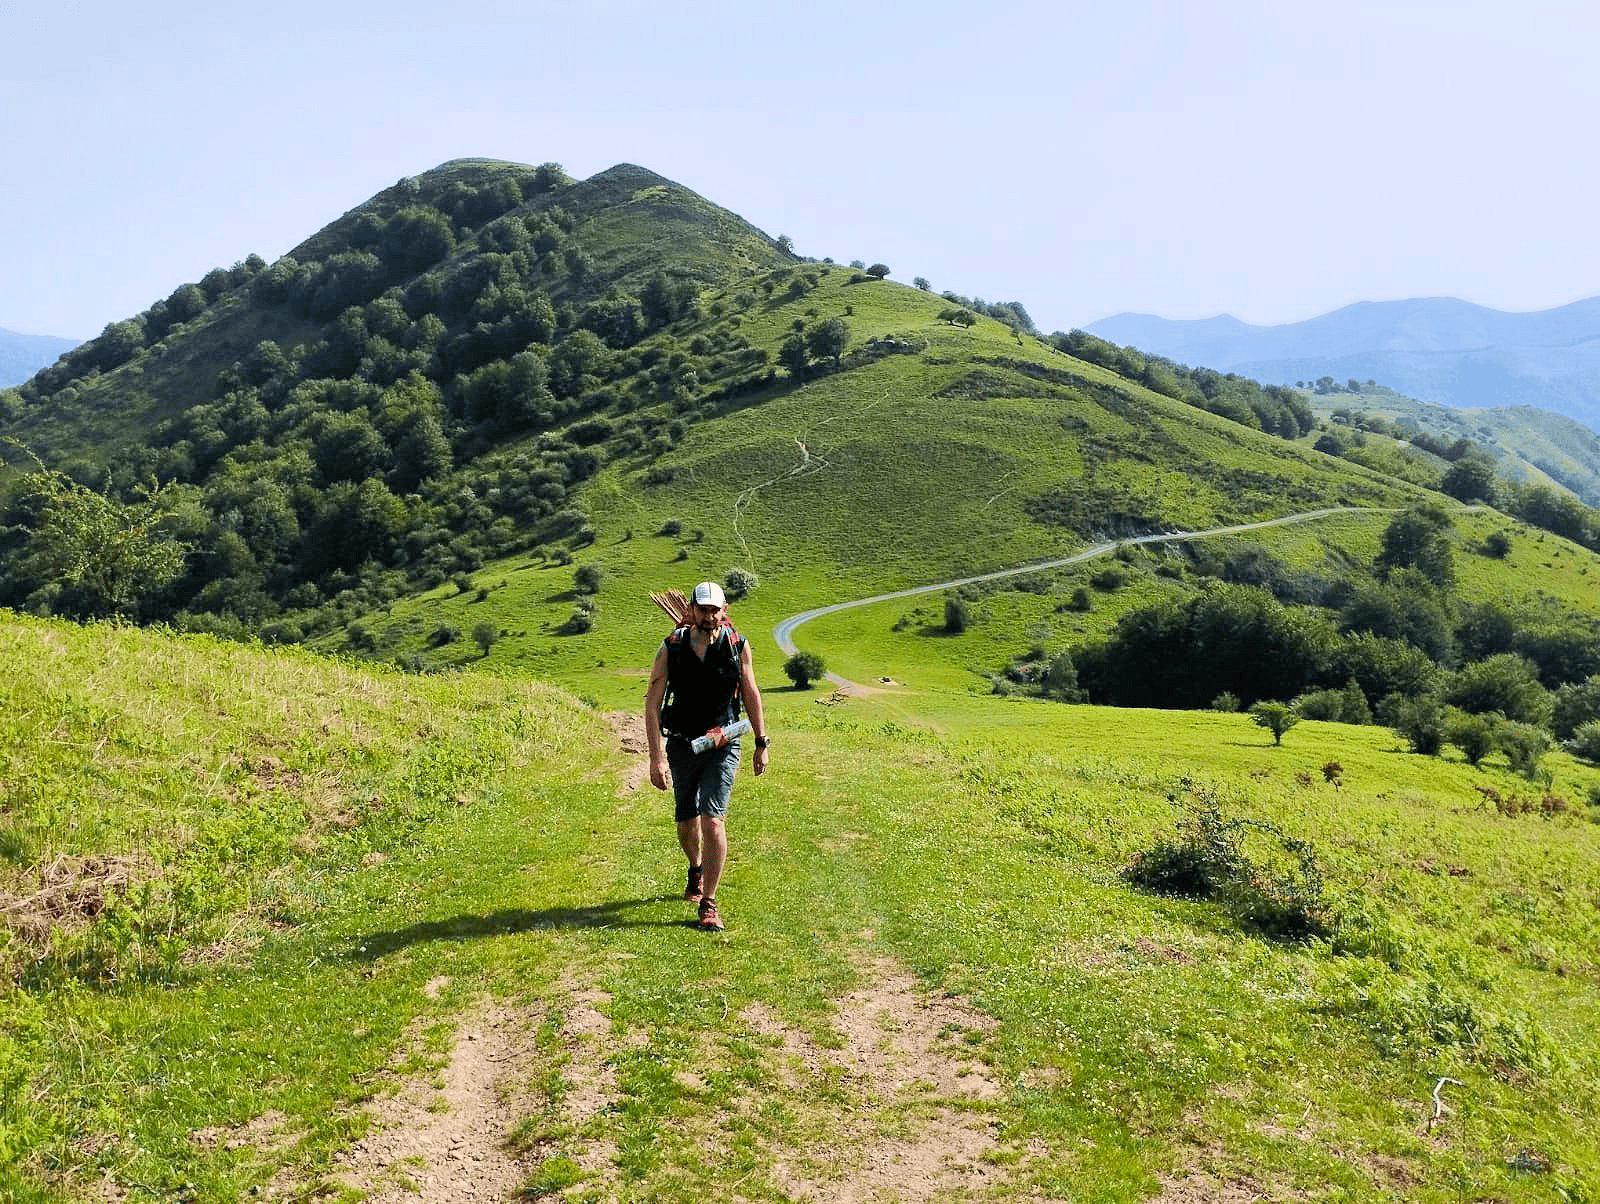 Euskal Trail parmi les meilleurs trails des Pyrénées © Euskal Trail Facebook